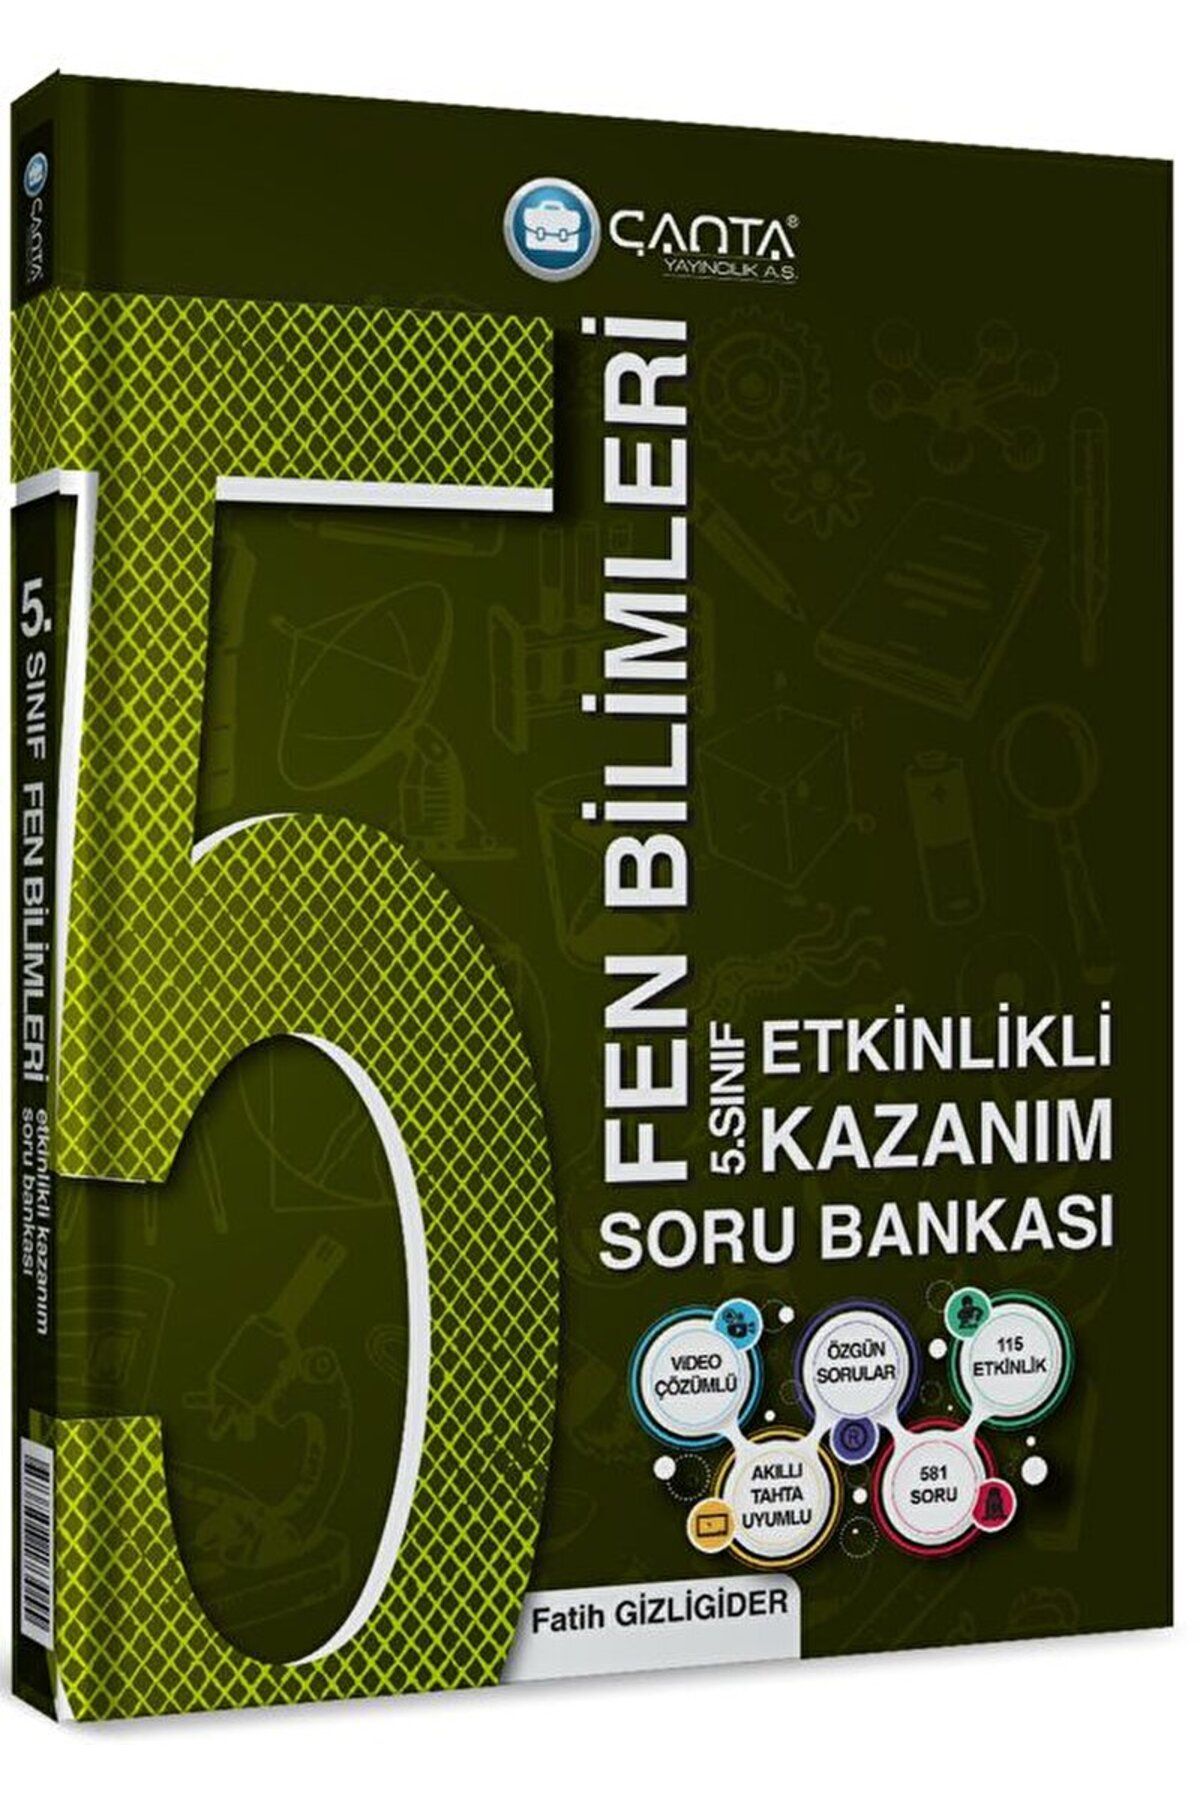 Çanta Yayınları 5. Sınıf Fen Bilimleri Etkinlikli Kazanım Soru Bankası / Çanta Yayınları / 9786258173055